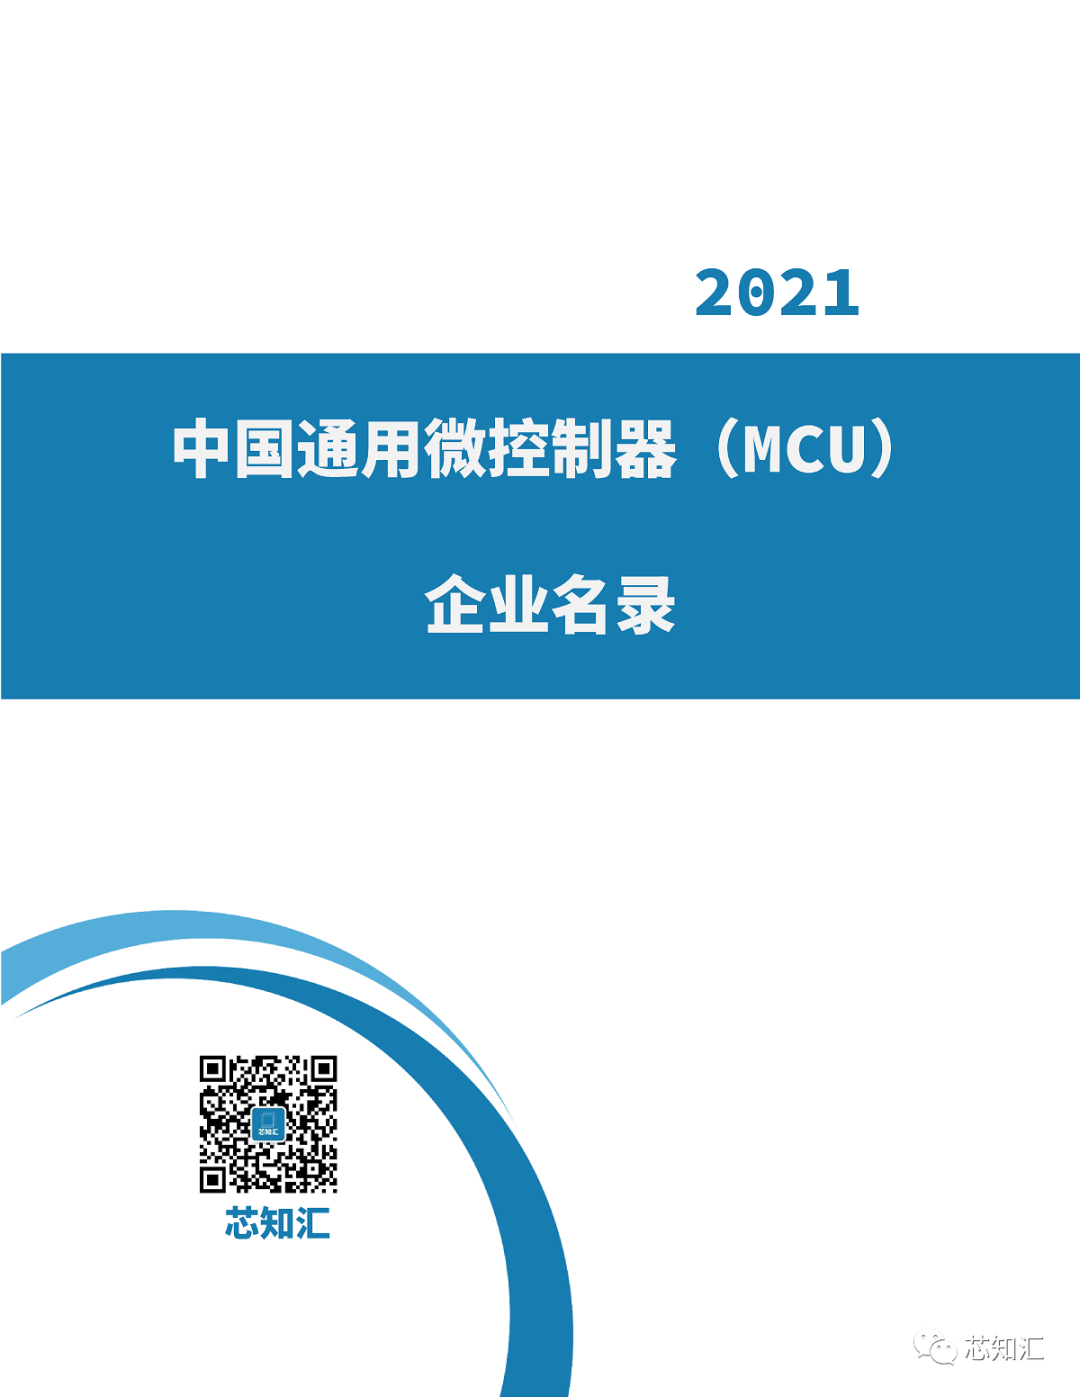 中国通用微控制器(MCU)企业名录-2021